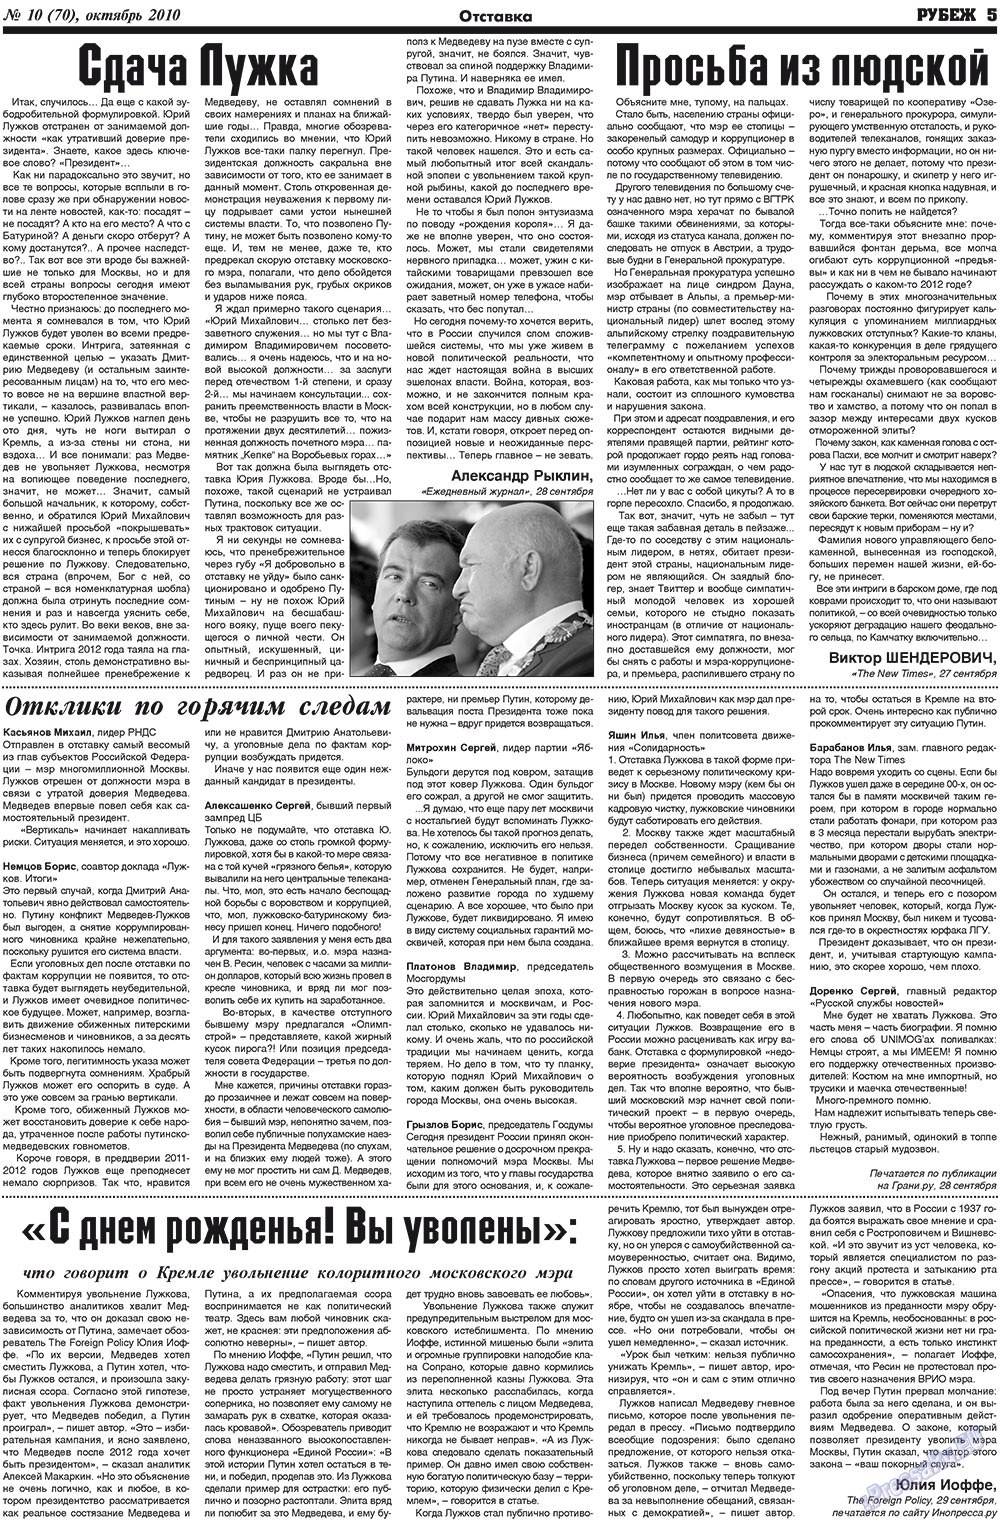 Рубеж (газета). 2010 год, номер 10, стр. 5